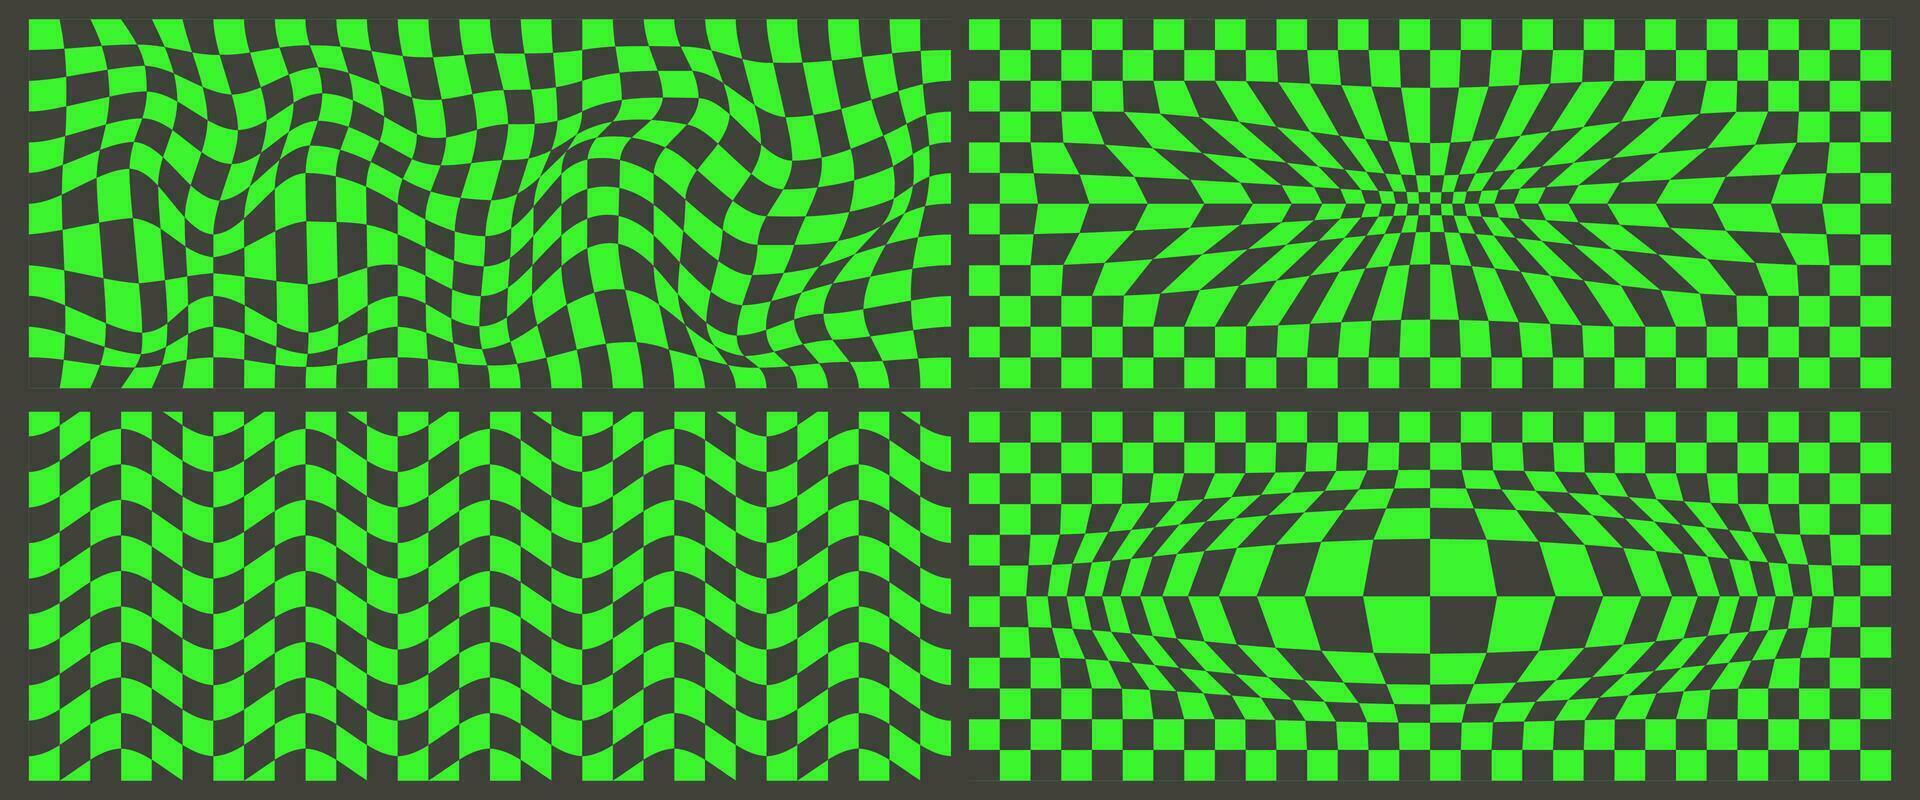 schaakbord patroon. zwart en groen psychedelisch golvend achtergronden set. abstract rooster kromtrekken textuur. y2k schaakbord enthousiast meetkundig ontwerp. vector illustratie.